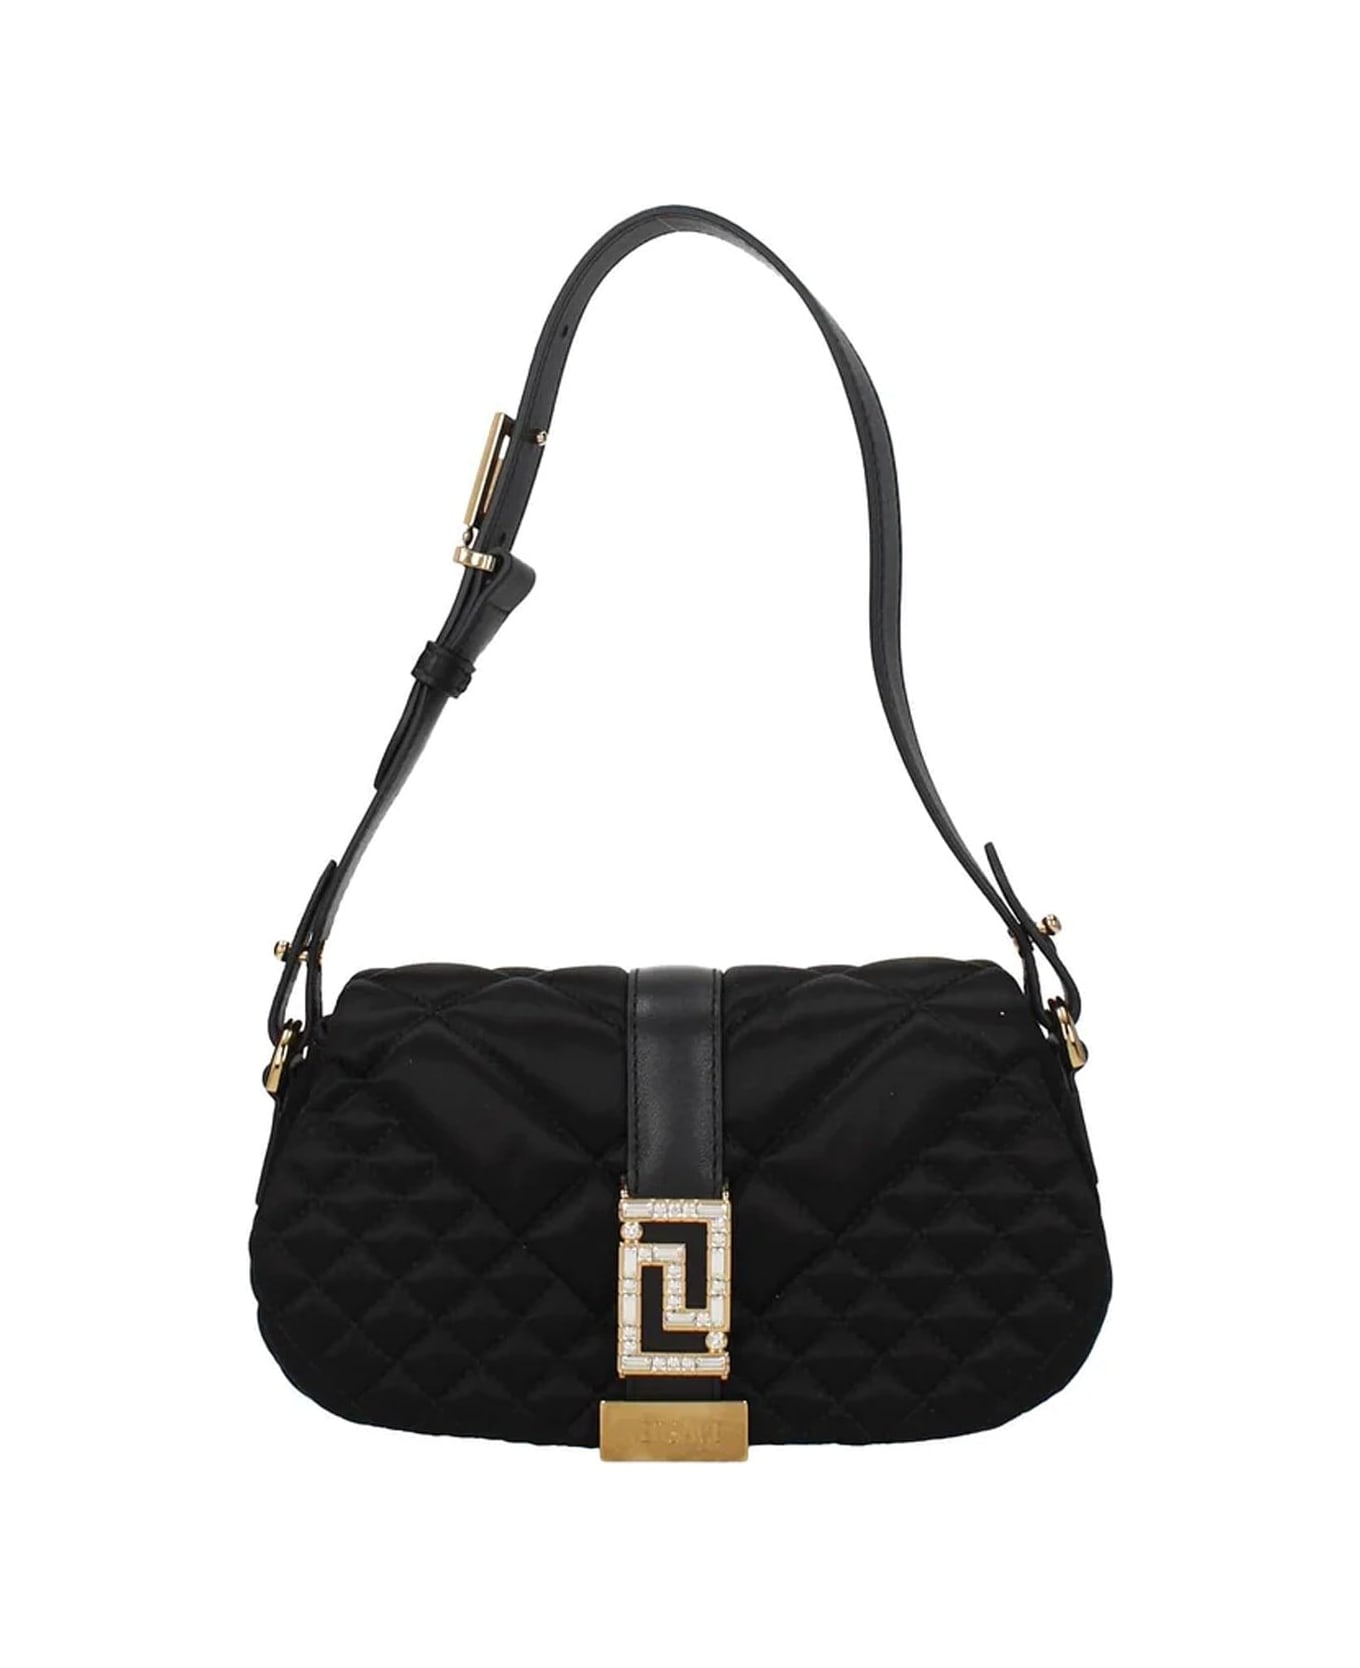 Versace Satin Shoulder Bag - Black